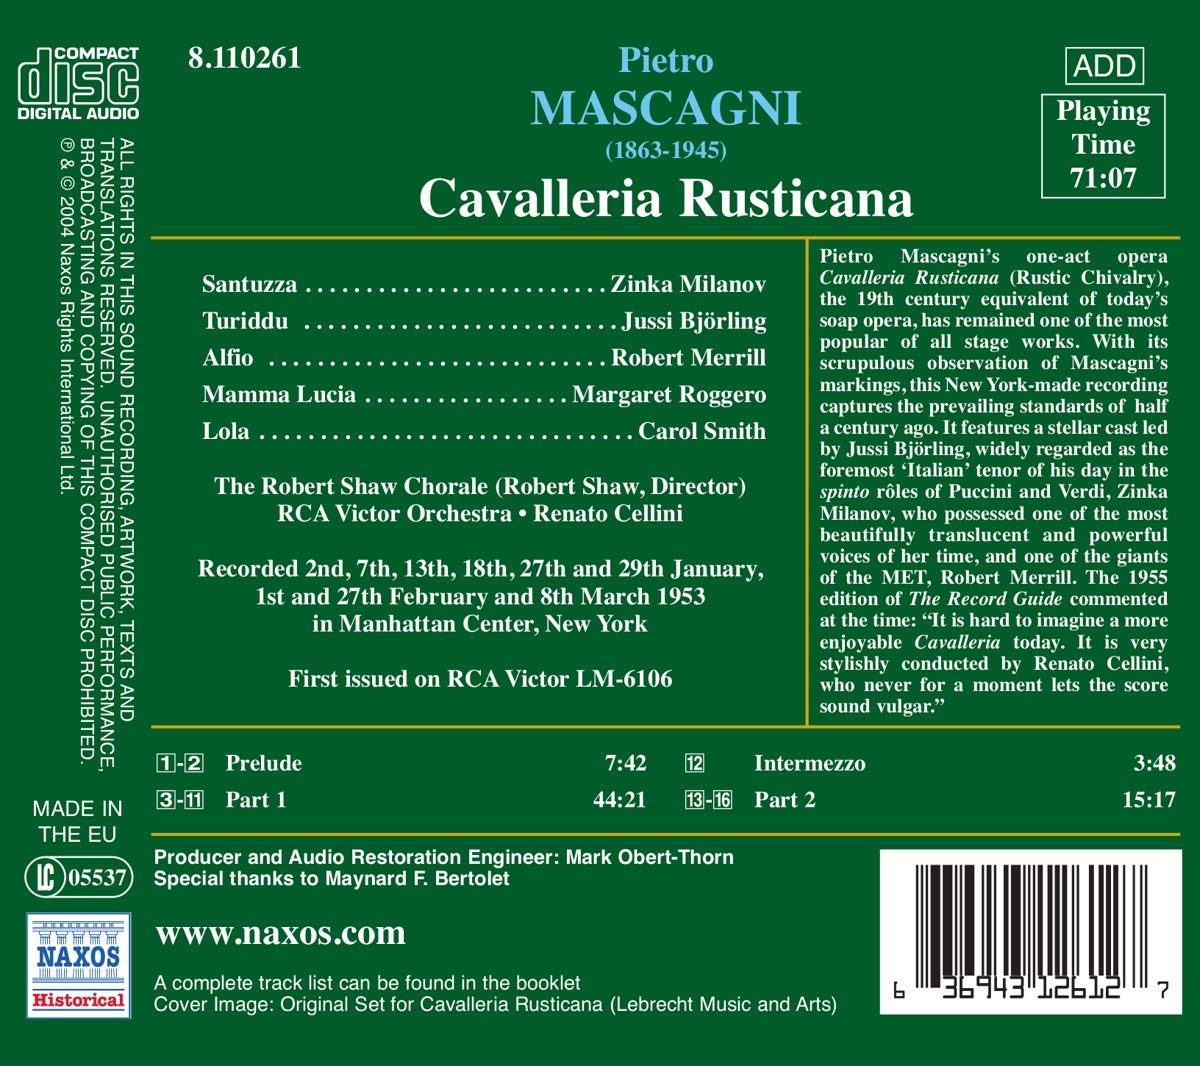 MASCAGNI: Cavalleria Rusticana - slide-1